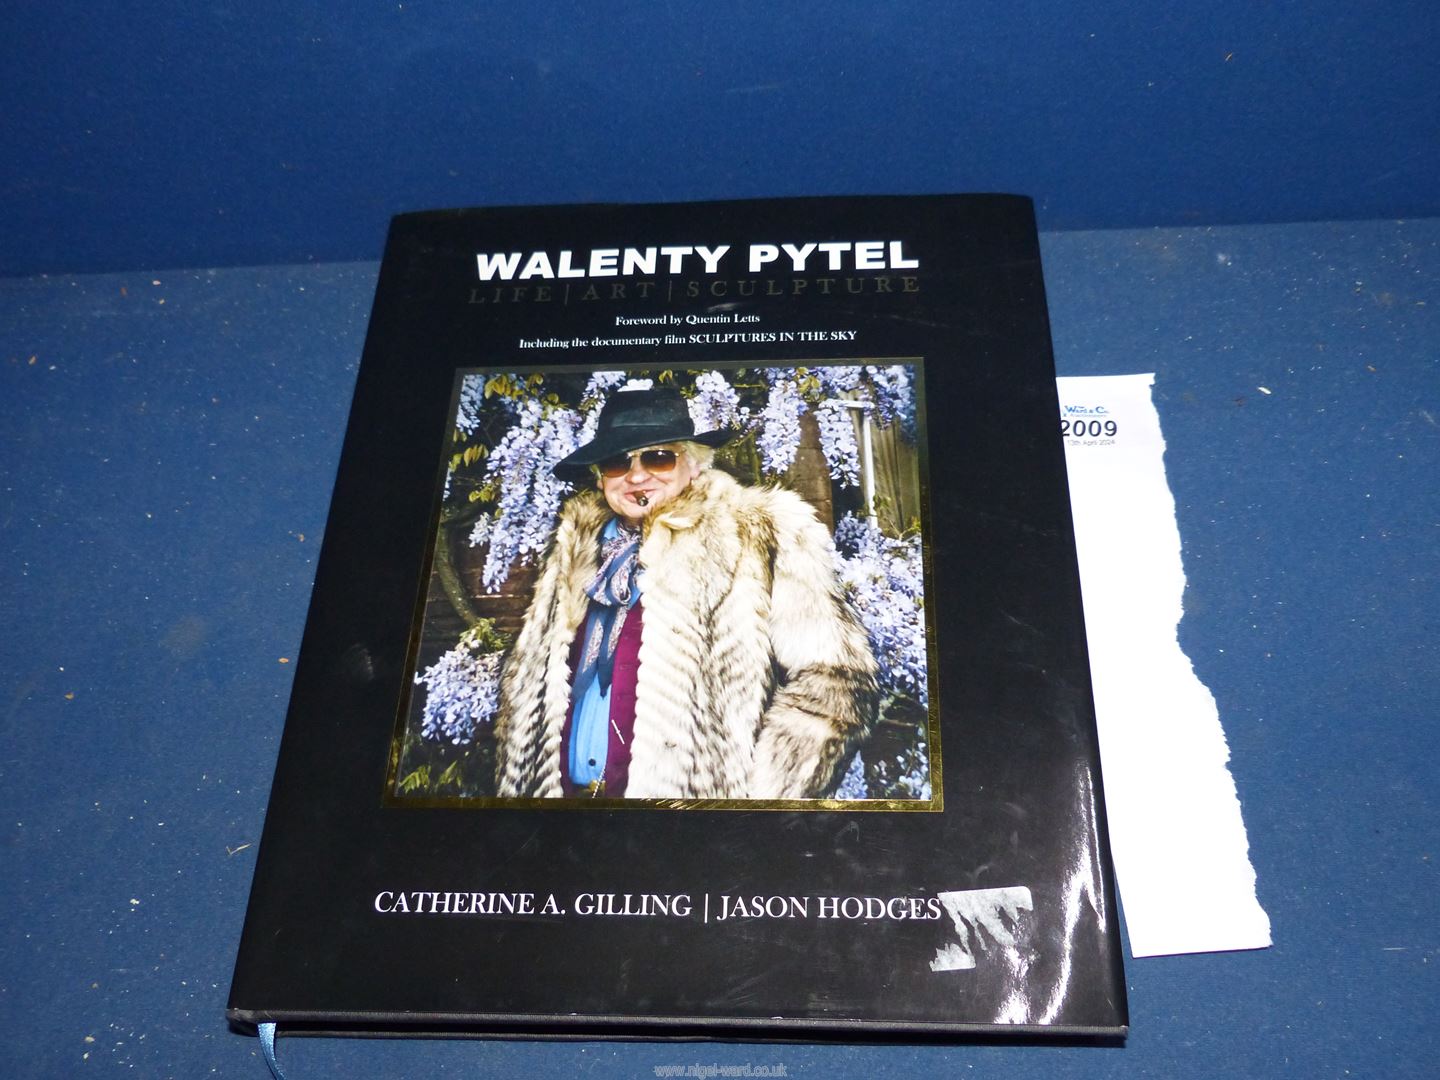 A first edition 'Walenty Pytel, Life, Art, Sculpture' signed by Walenty Pytel.